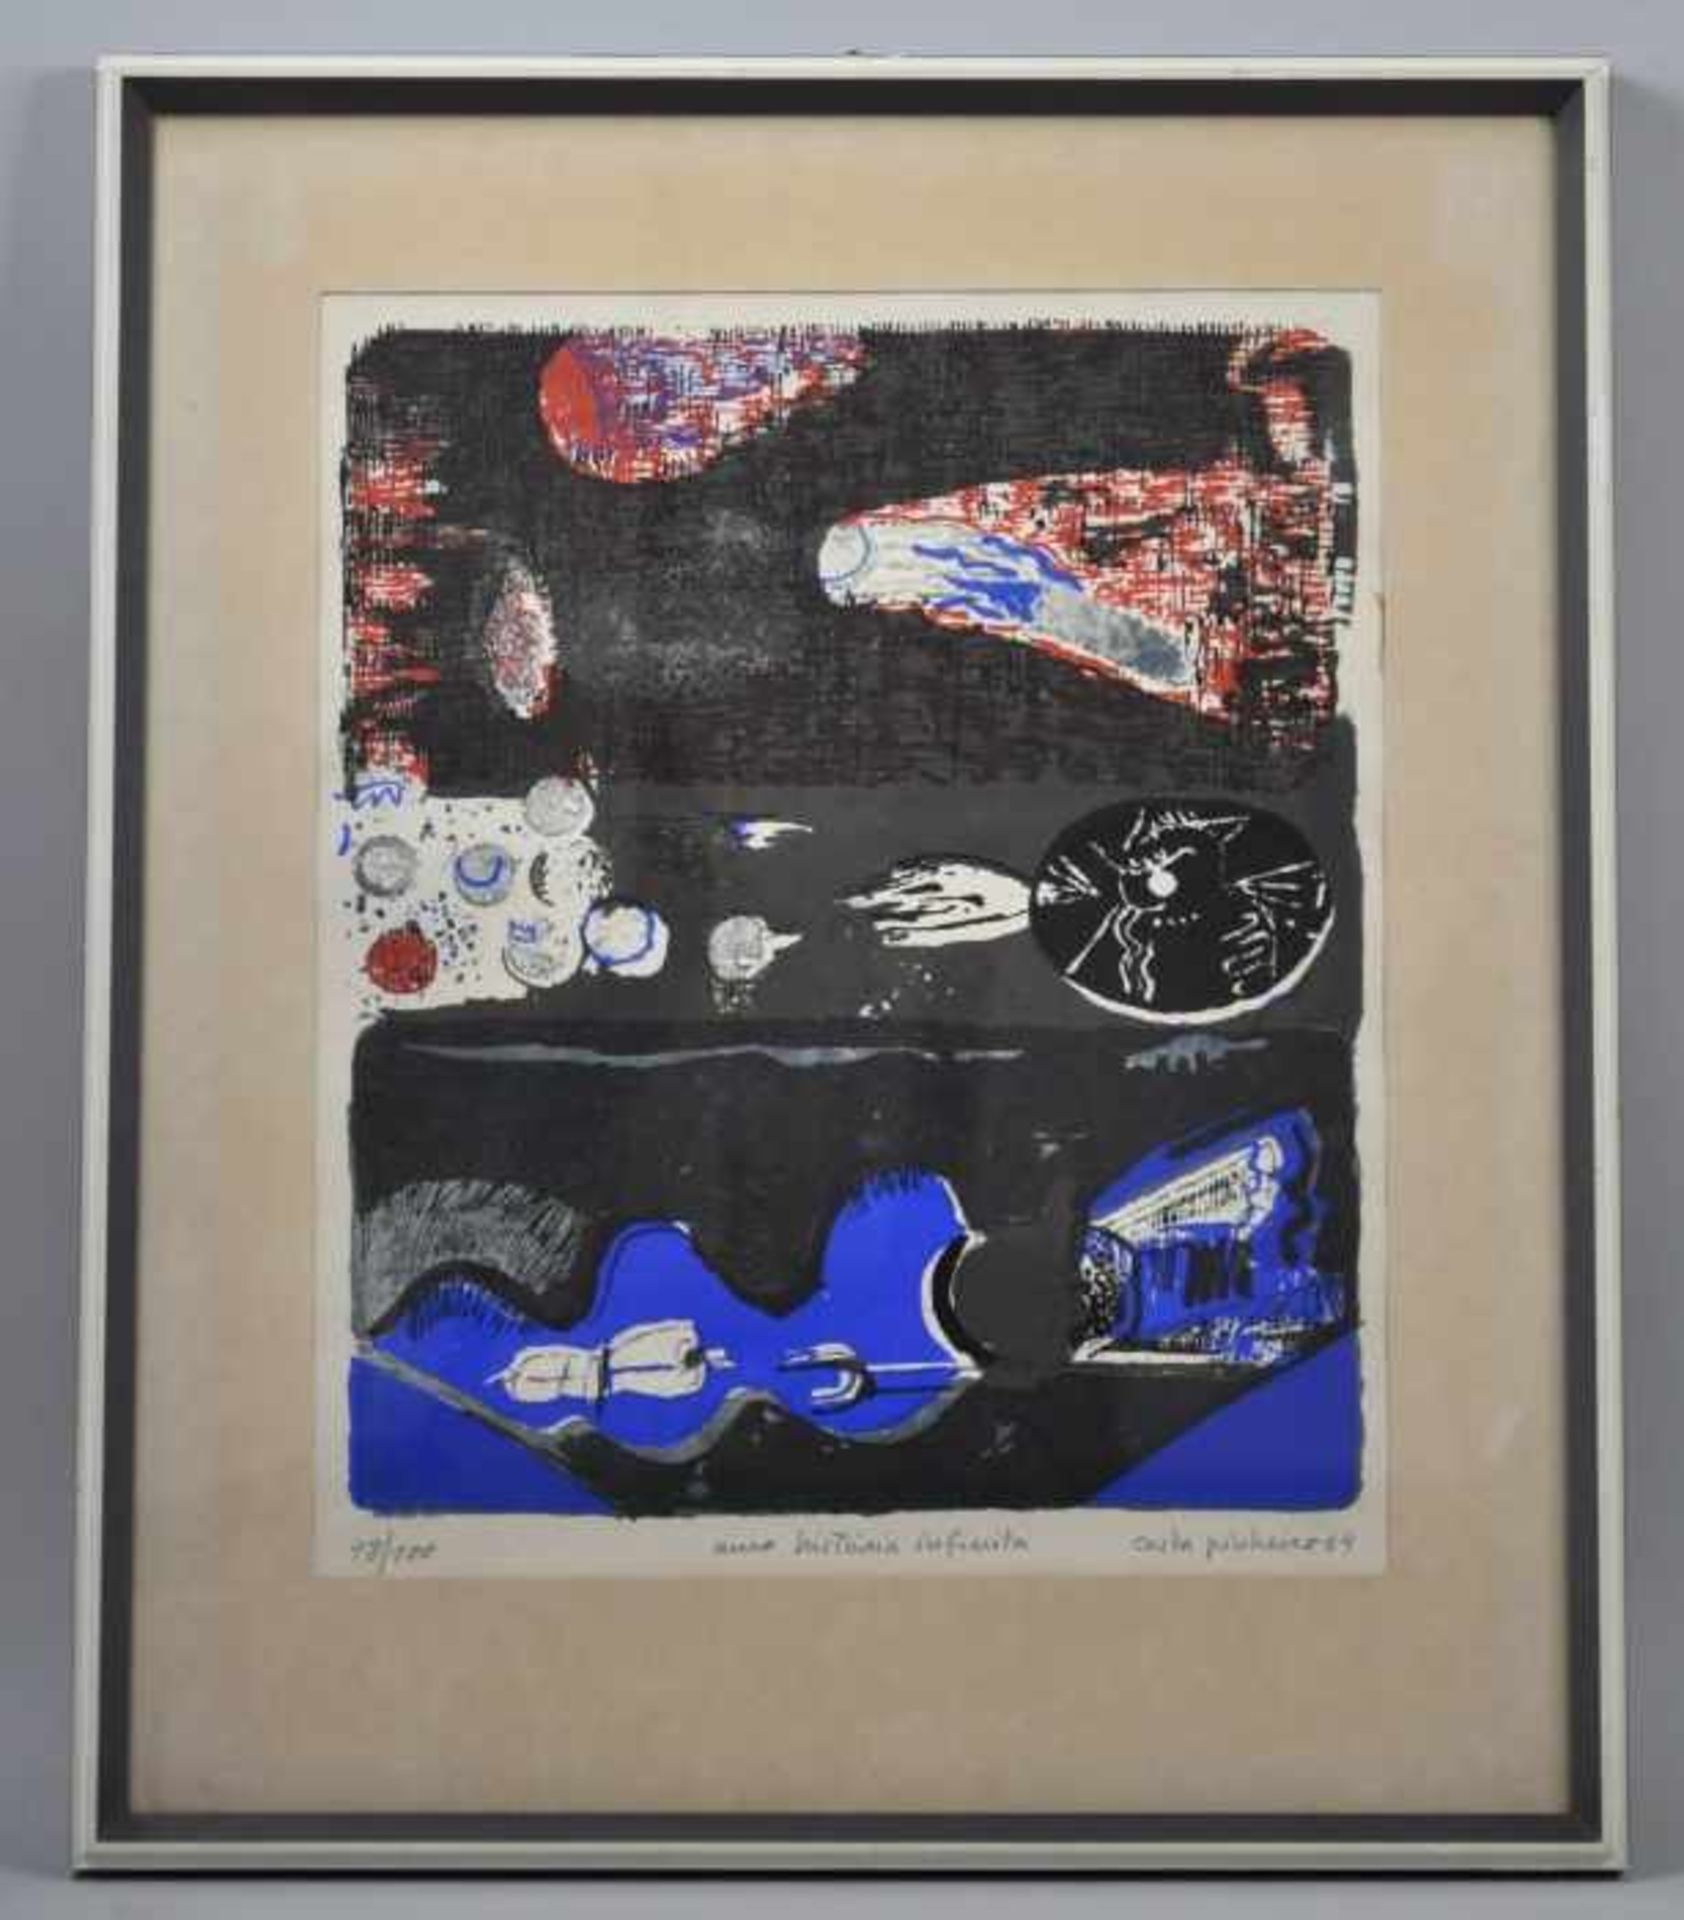 PINHEIRO António Costa (1932 Moura - 2015 München) "Una historia infinito", Komposition in Blau/ - Bild 2 aus 3